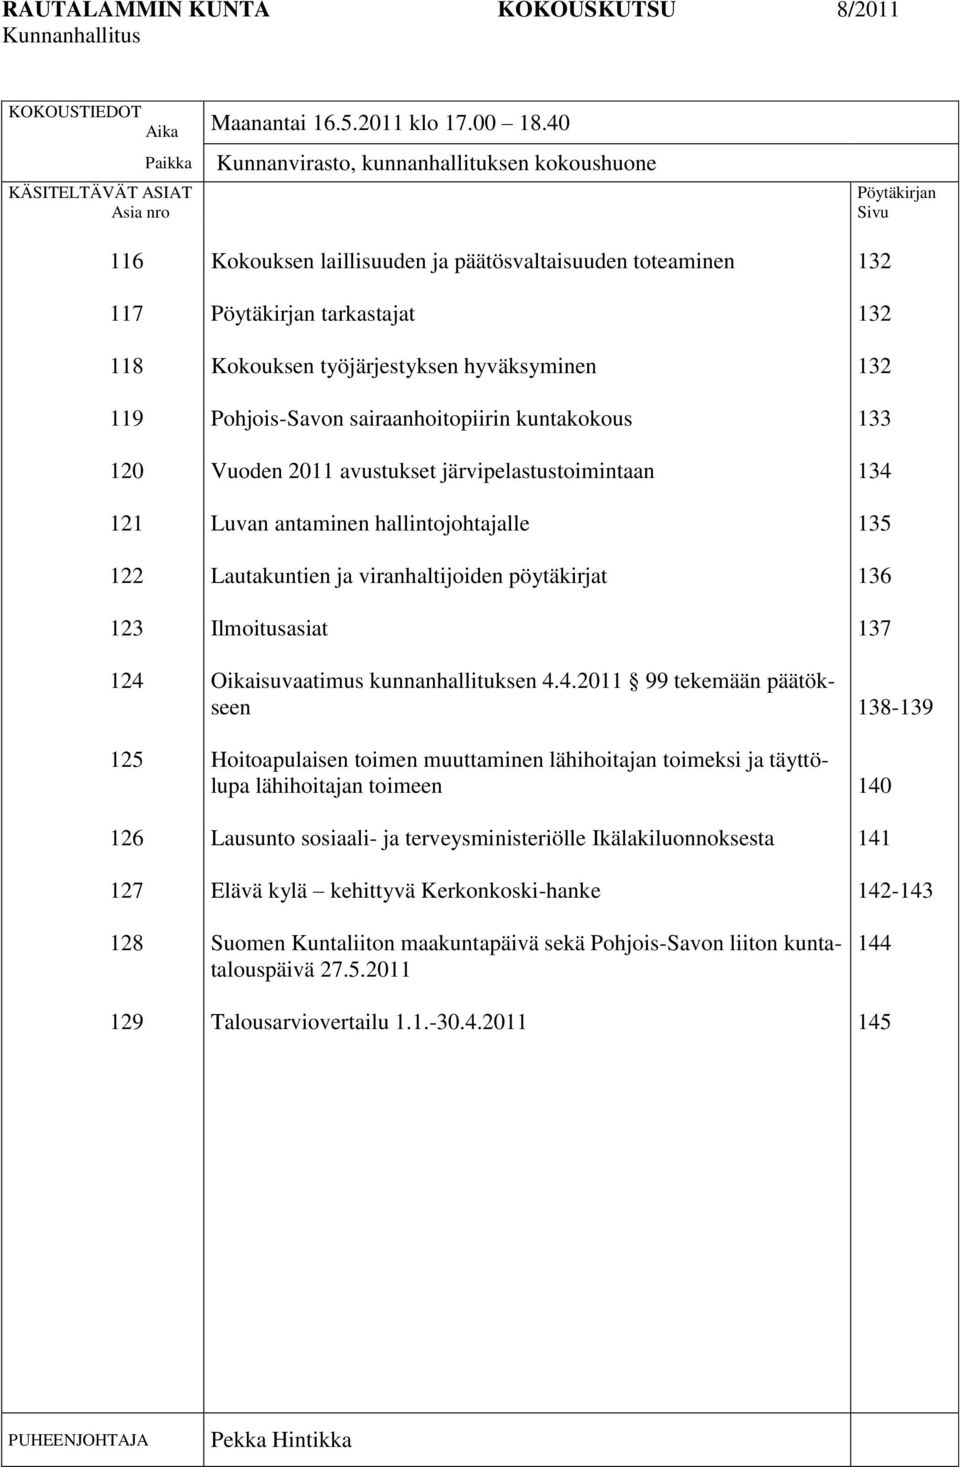 päätösvaltaisuuden toteaminen Pöytäkirjan tarkastajat Kokouksen työjärjestyksen hyväksyminen Pohjois-Savon sairaanhoitopiirin kuntakokous Vuoden 2011 avustukset järvipelastustoimintaan Luvan